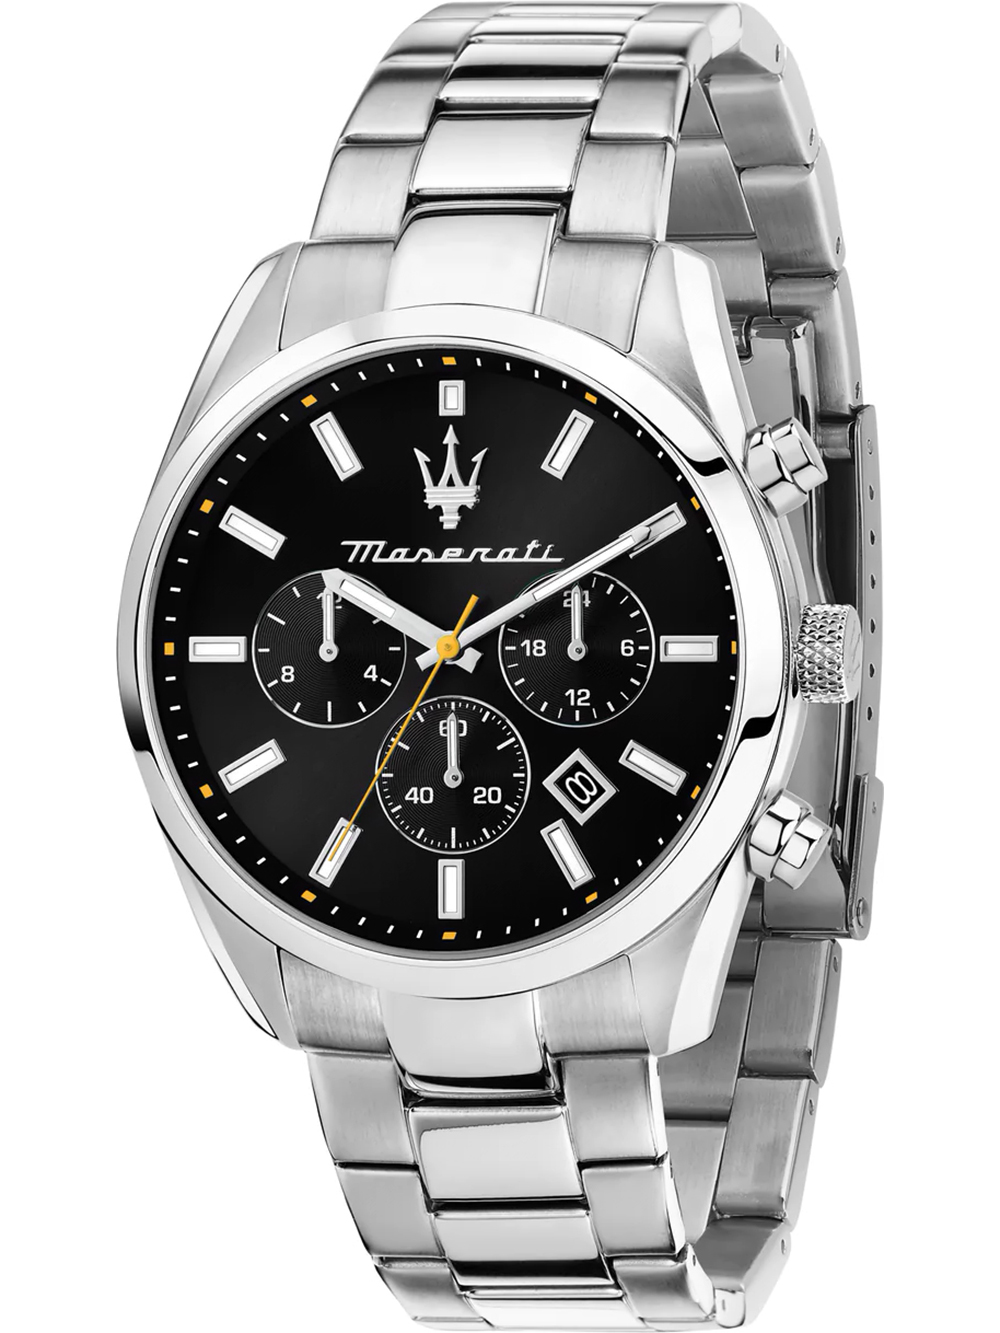 Pánské hodinky Maserati R8853151010 Attrazione